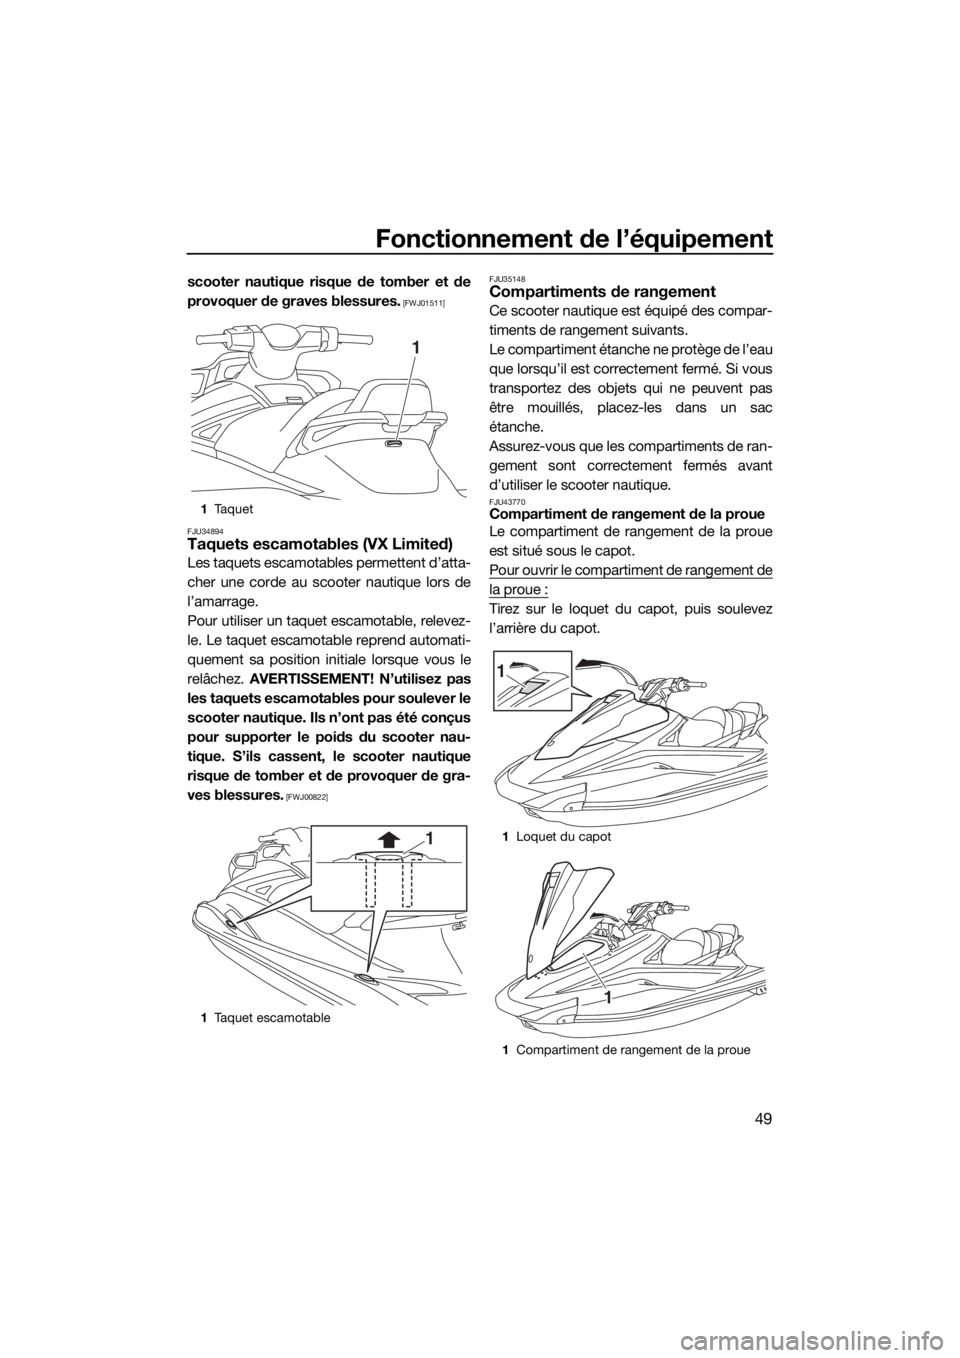 YAMAHA VX 2019  Notices Demploi (in French) Fonctionnement de l’équipement
49
scooter nautique risque de tomber et de
provoquer de graves blessures.
 [FWJ01511]
FJU34894
Taquets escamotables (VX Limited)
Les taquets escamotables permettent d